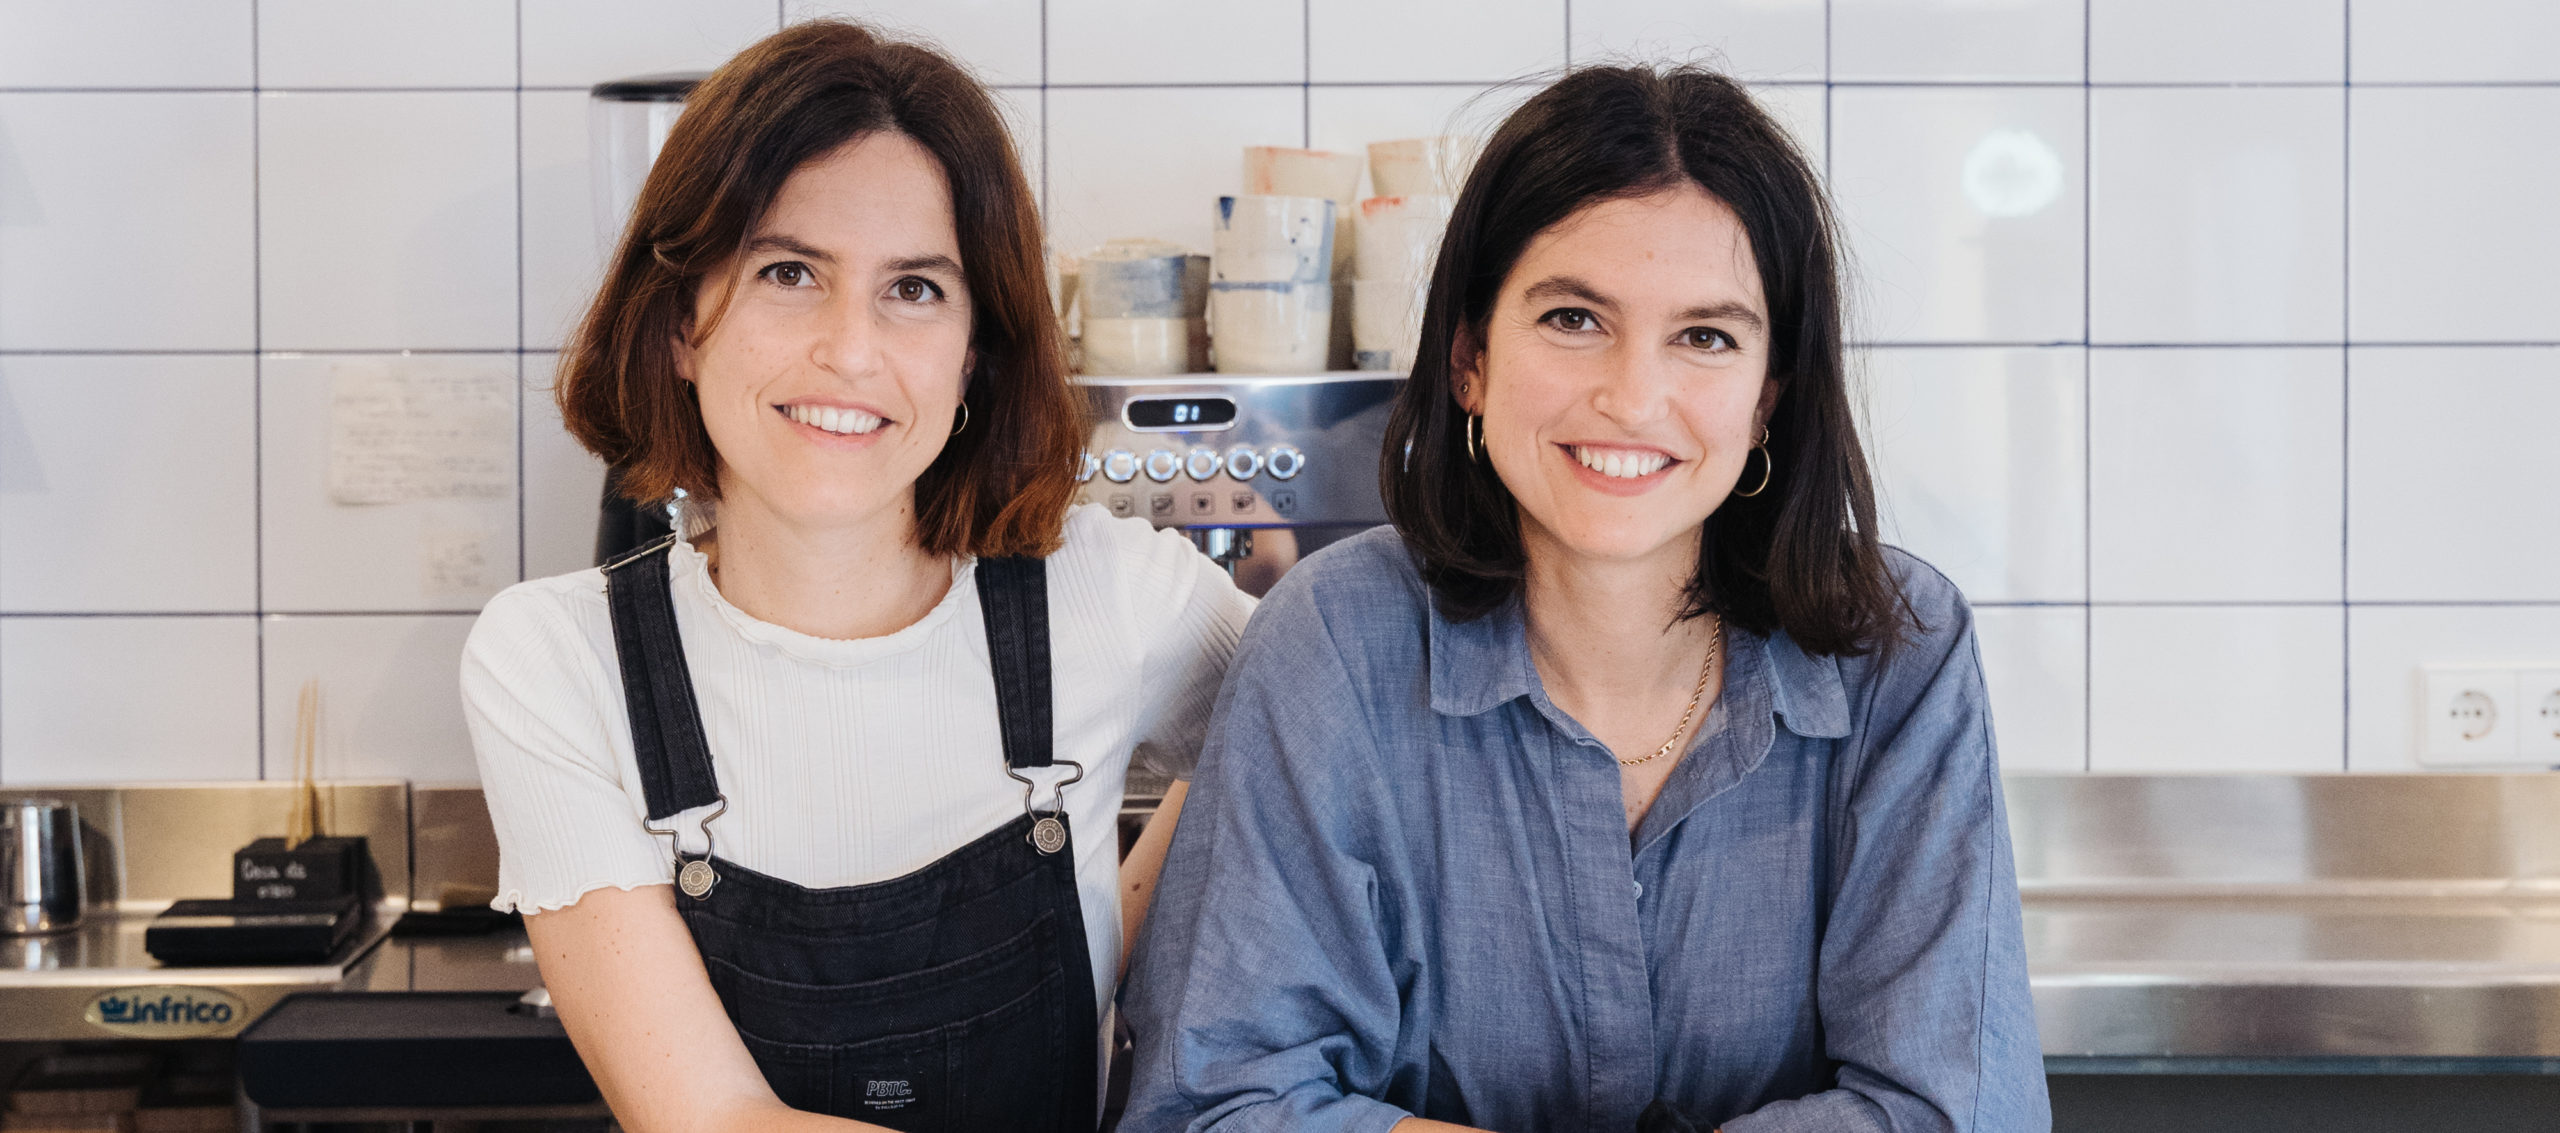 CAPICÚA, dos hermanas gemelas, licenciadas en derecho, y emprendedoras de un catering de éxito